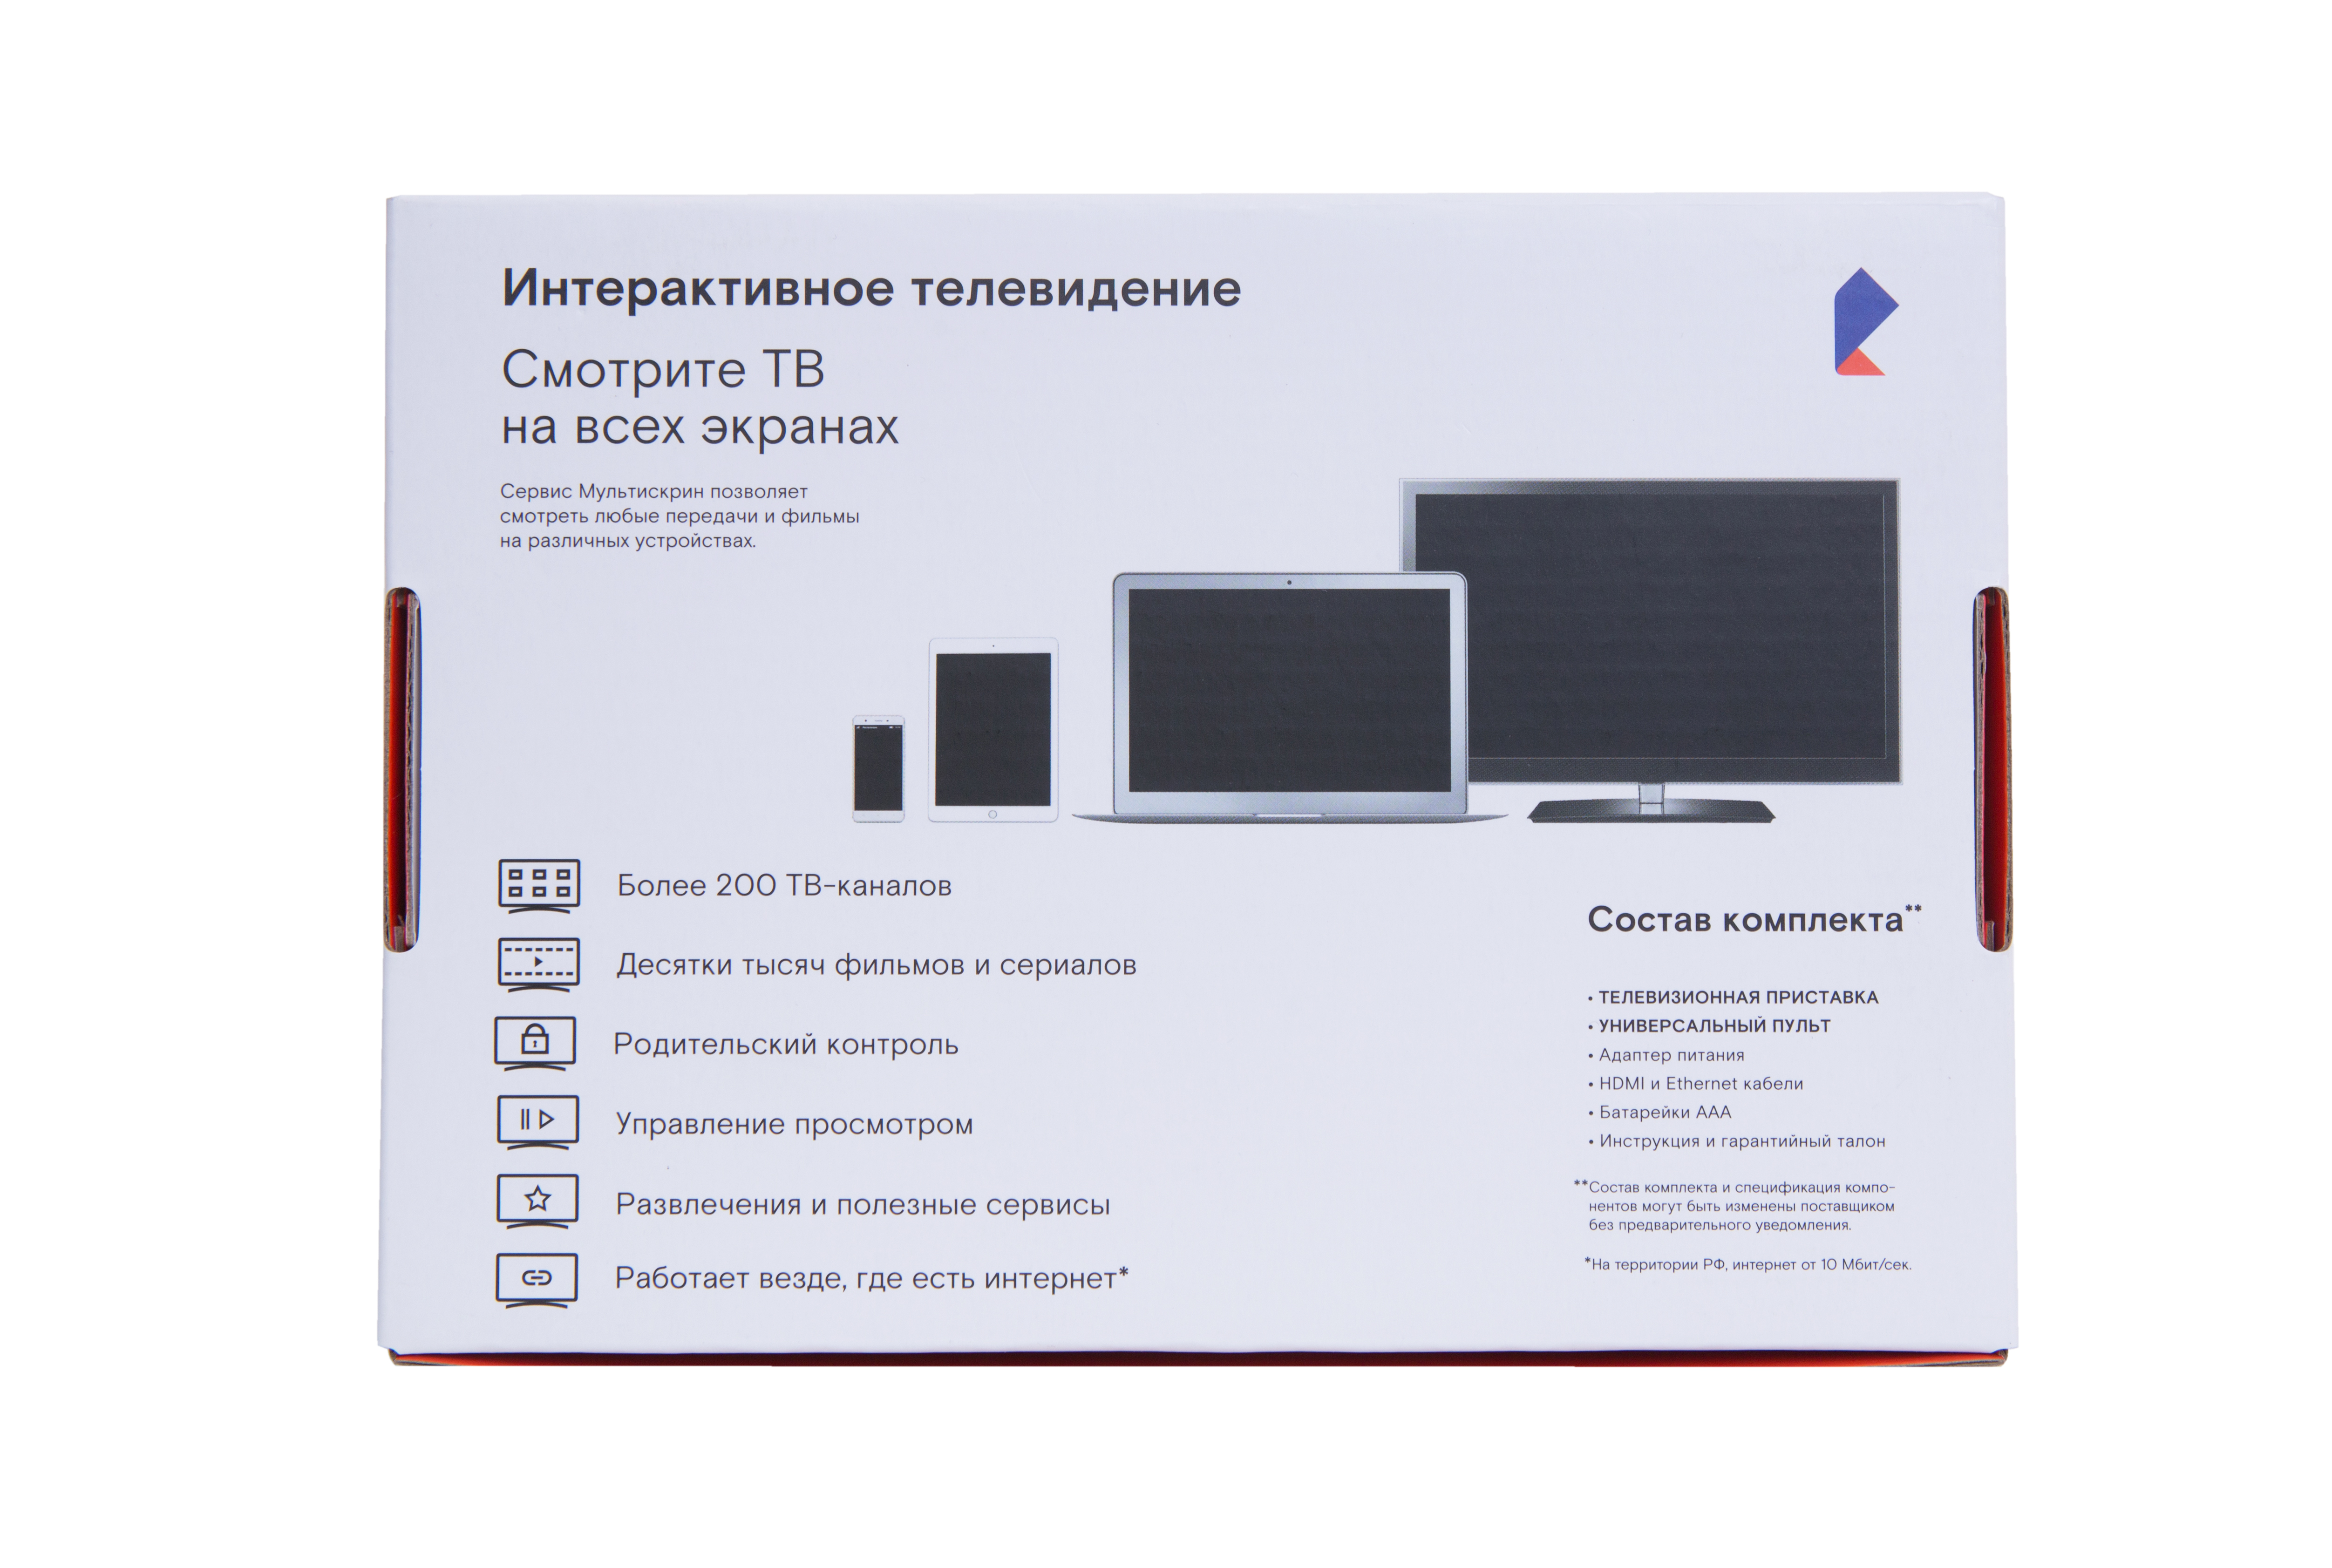 Все Ростелеком WINK (stb122a) цифровая TV приставка видеонаблюдения в магазине Vidos Group